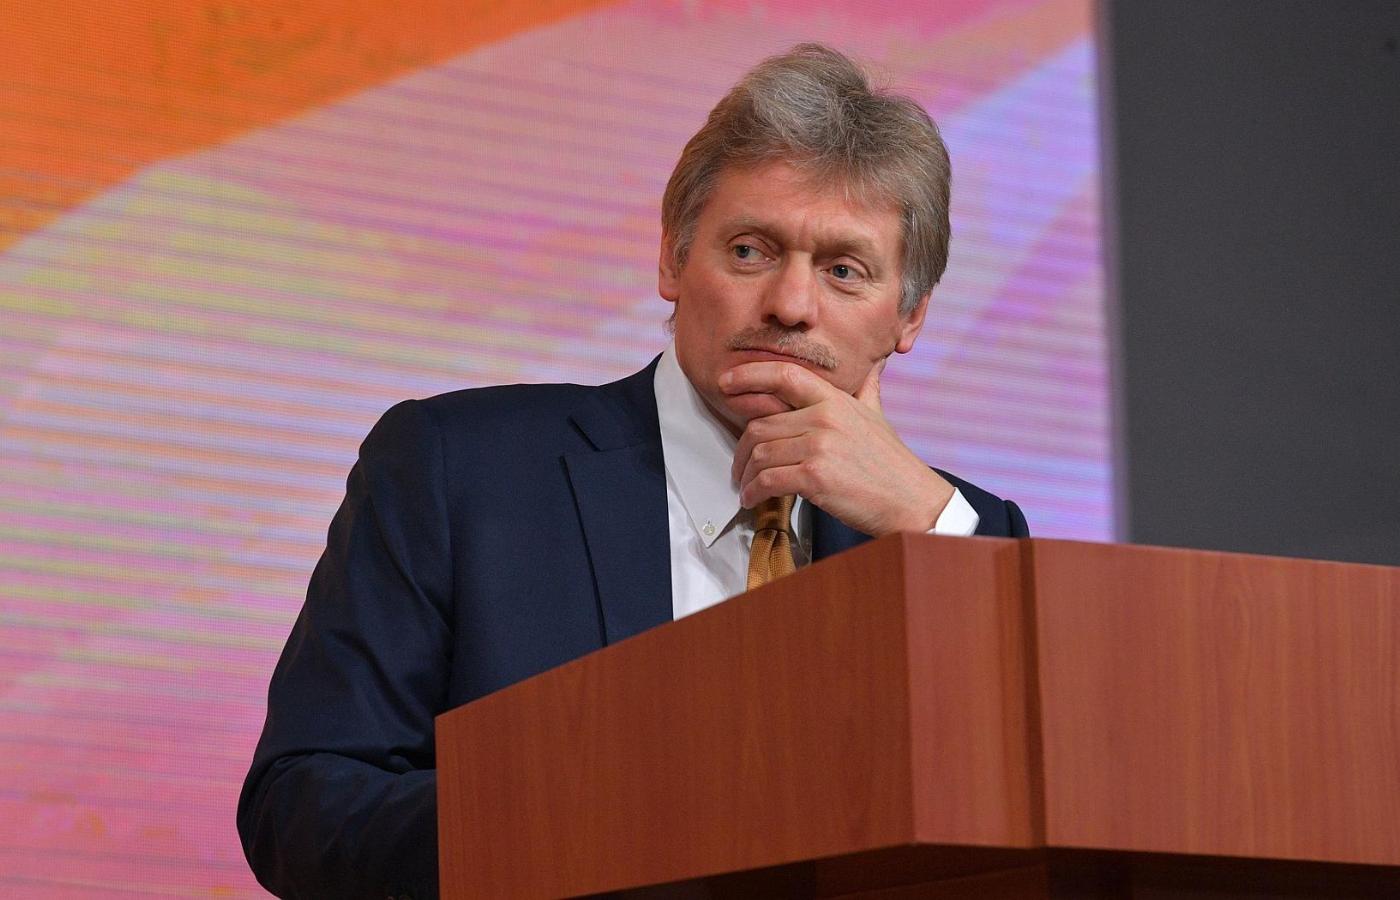 Prezydencki rzecznik Dmitrij Pieskow szybko ogłosił, że to projekt rządowy i że Putin „nie brał udziału w pracach”.